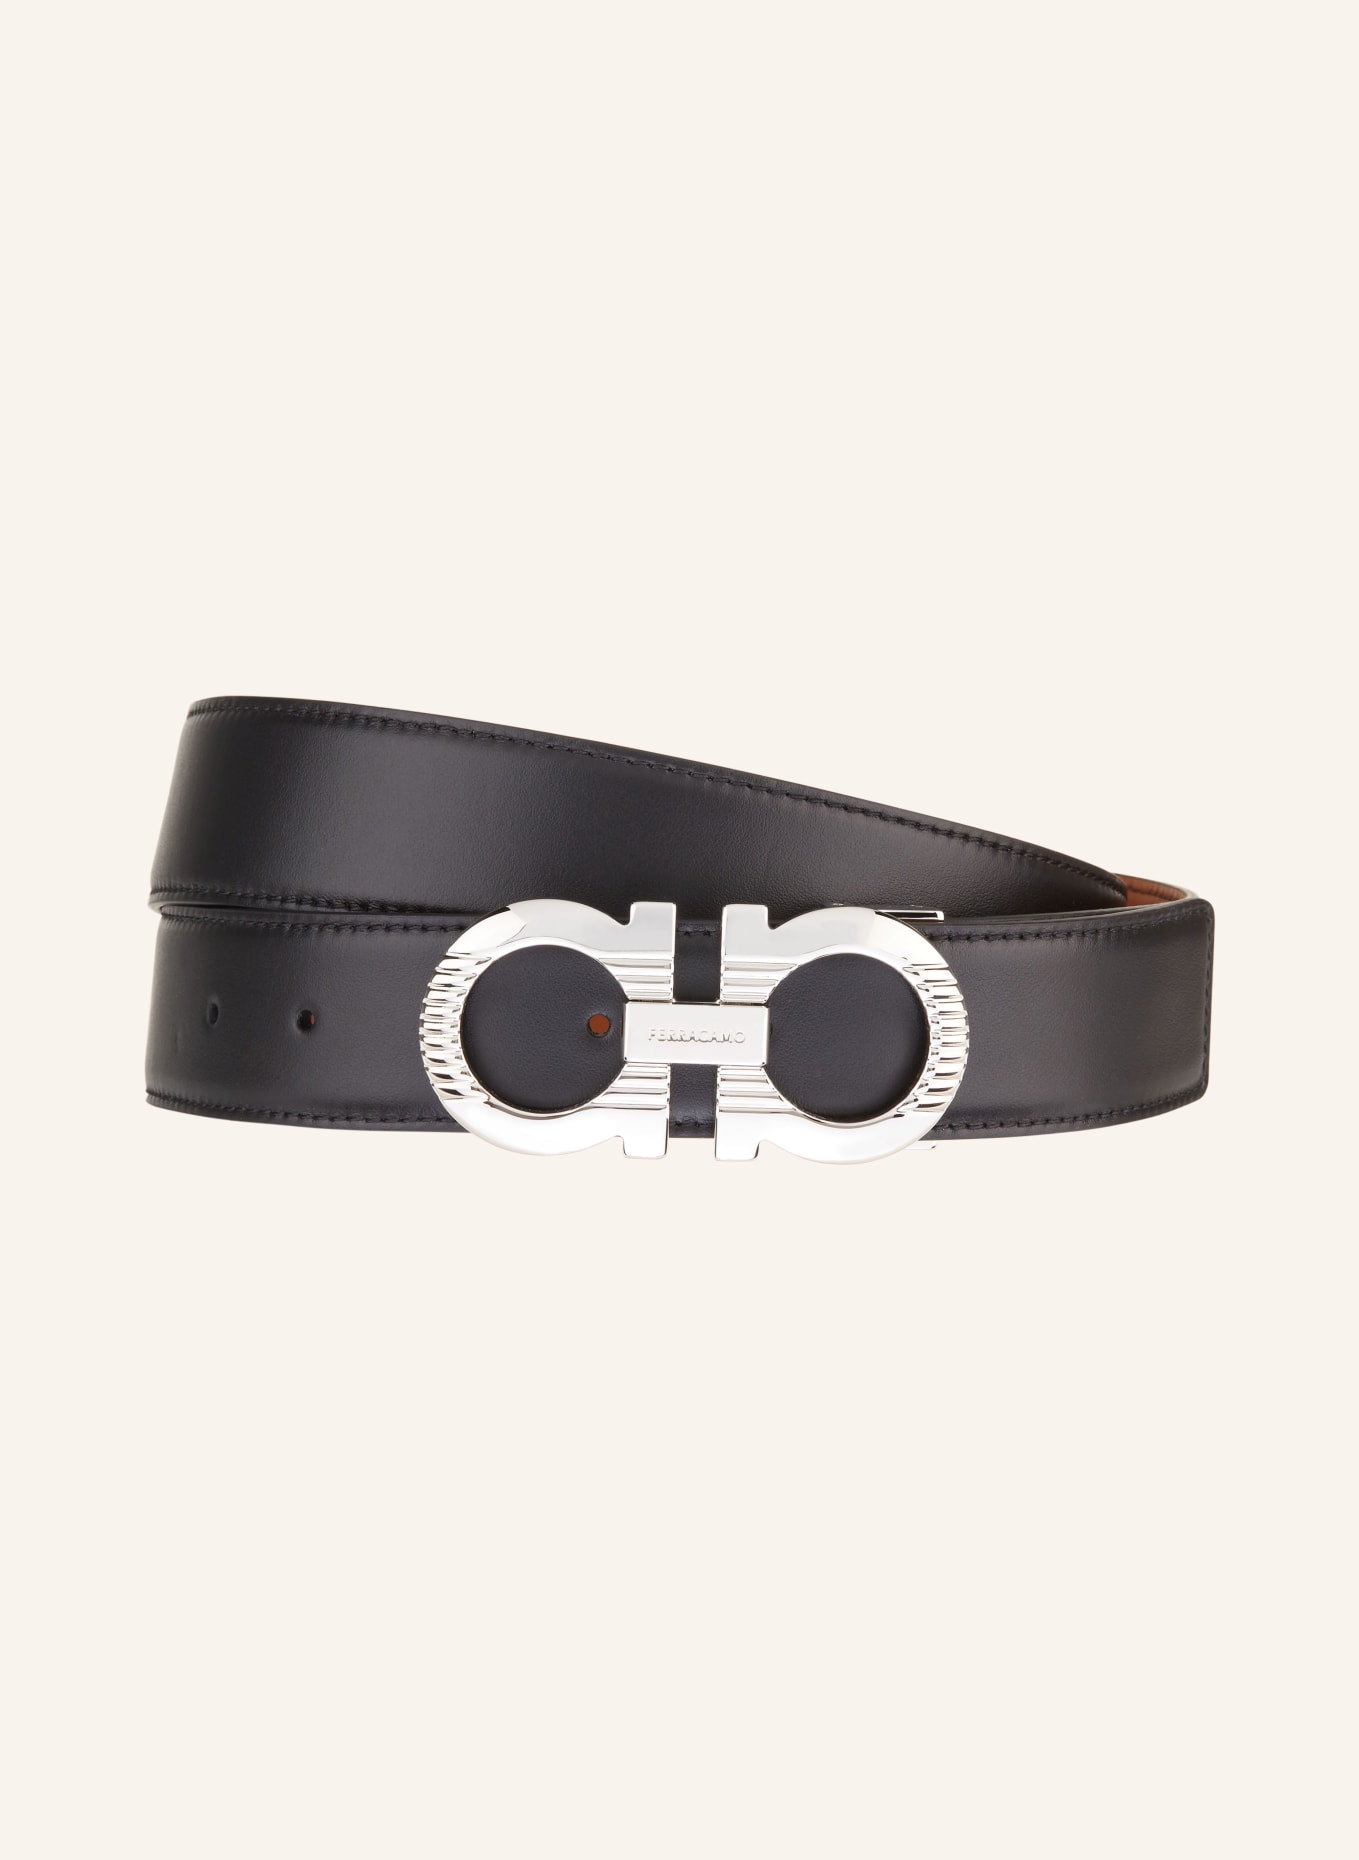 FERRAGAMO Reversible leather belt, Color: BLACK/ LIGHT BROWN (Image 1)